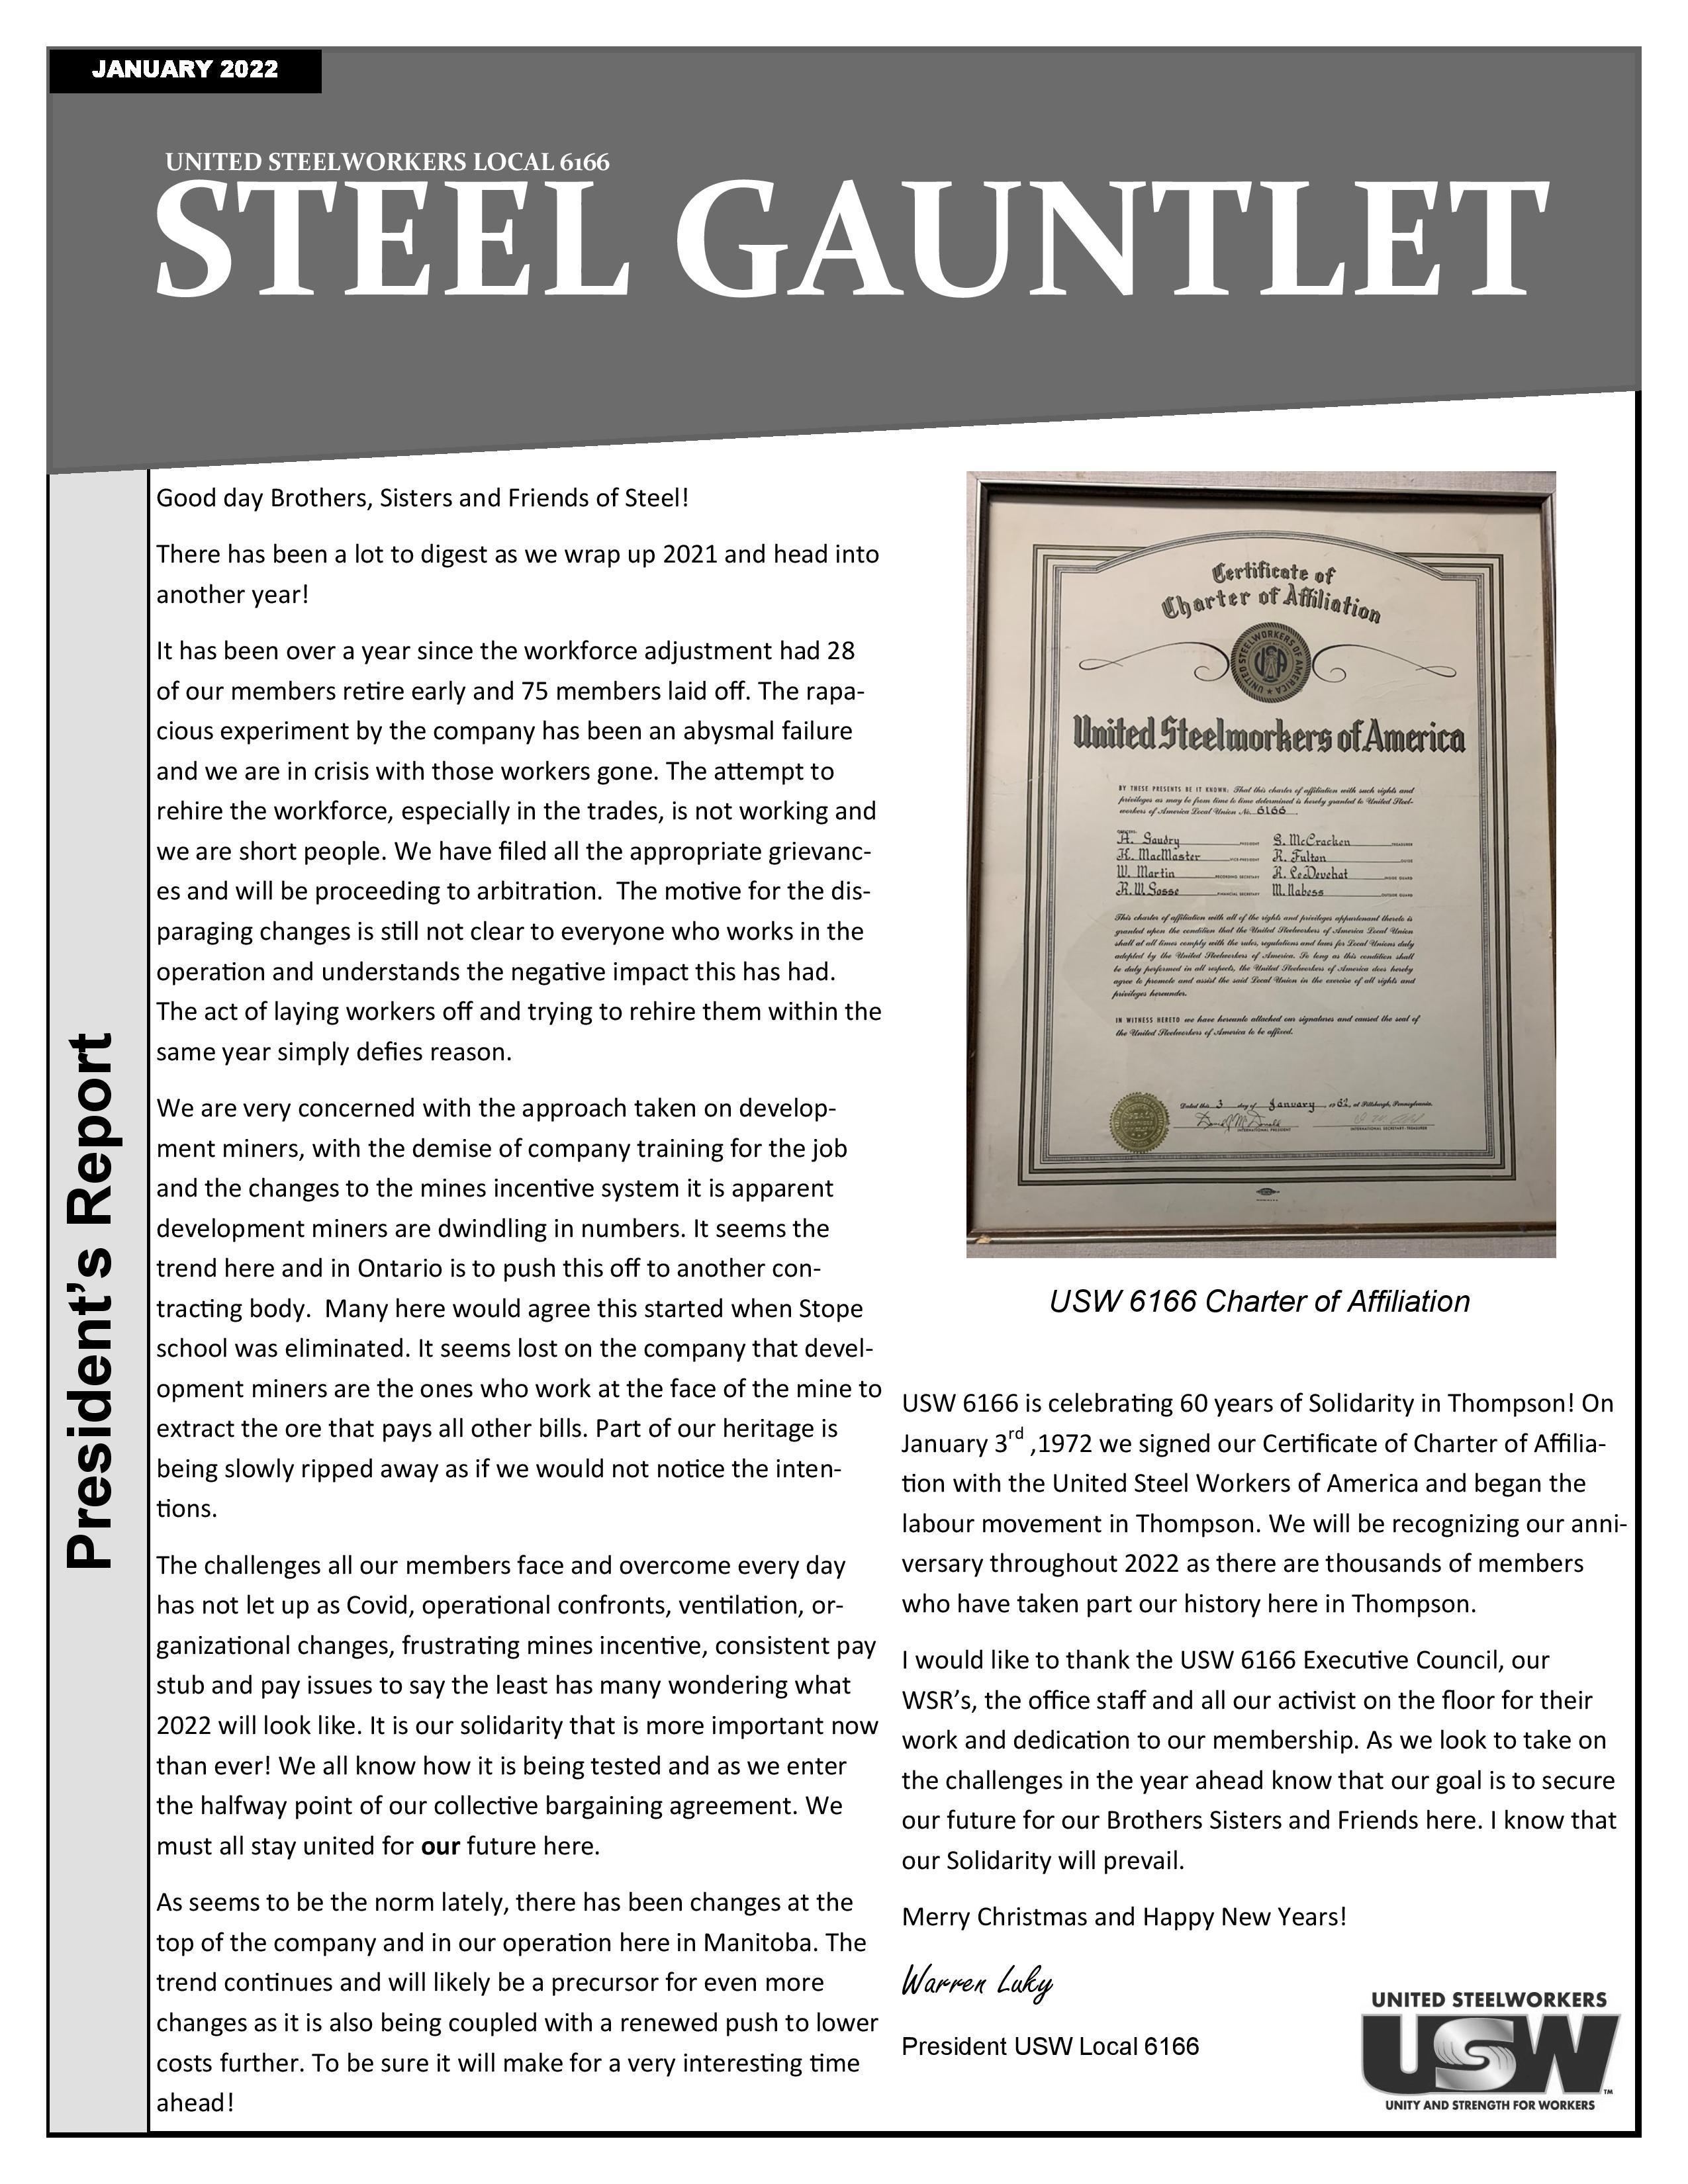 Jan 2022 Steel Gauntlet